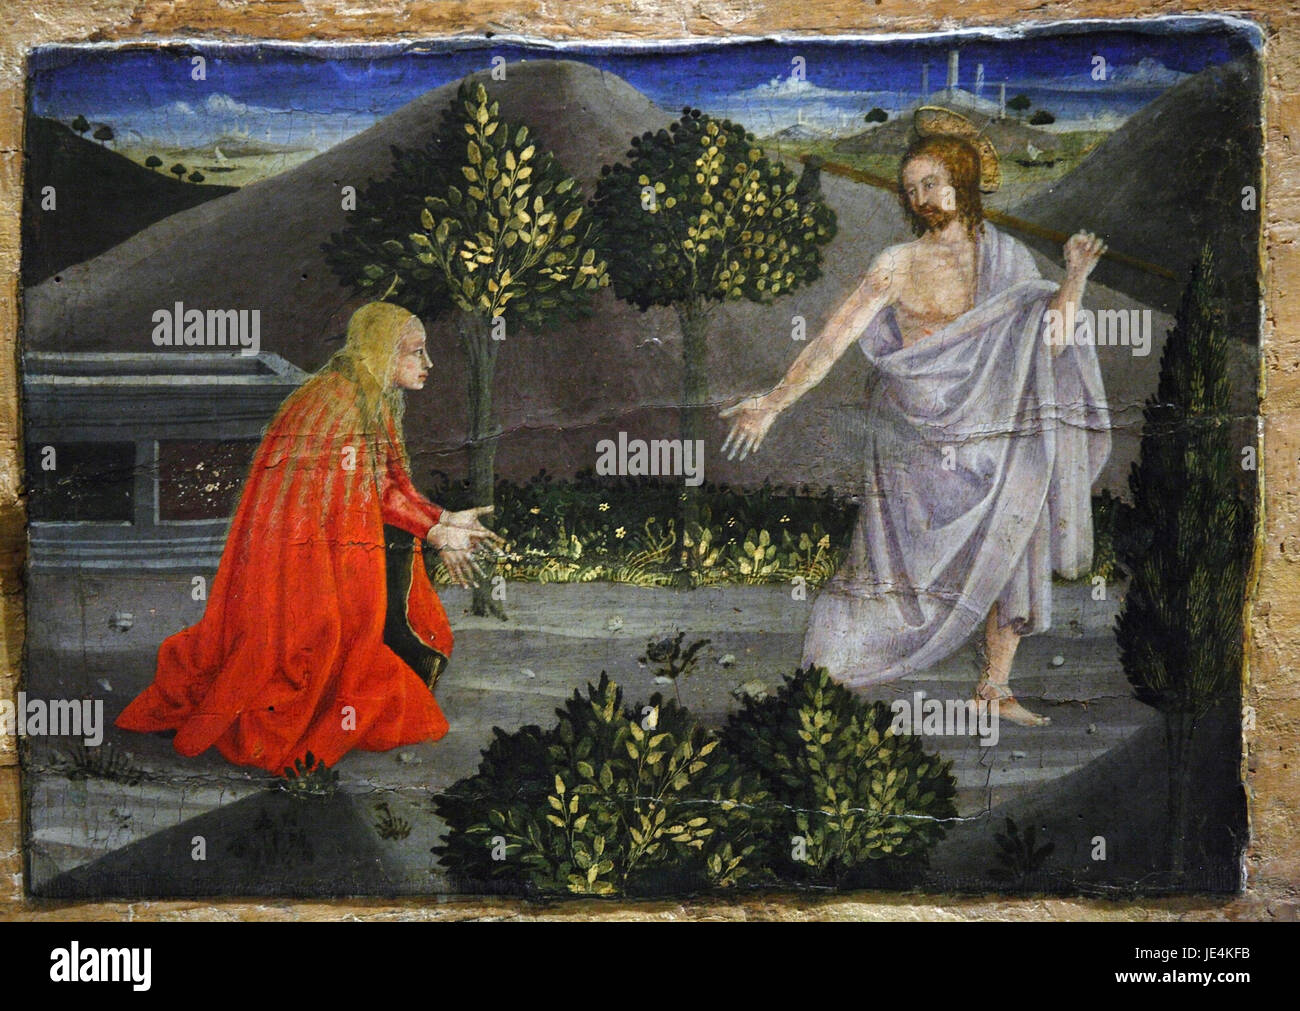 Sansepolcro: Museo di Piero della Francesca: restaurato dipinto di Piero della Francesca parte del polittico della Madonna della Misericordia Foto Stock